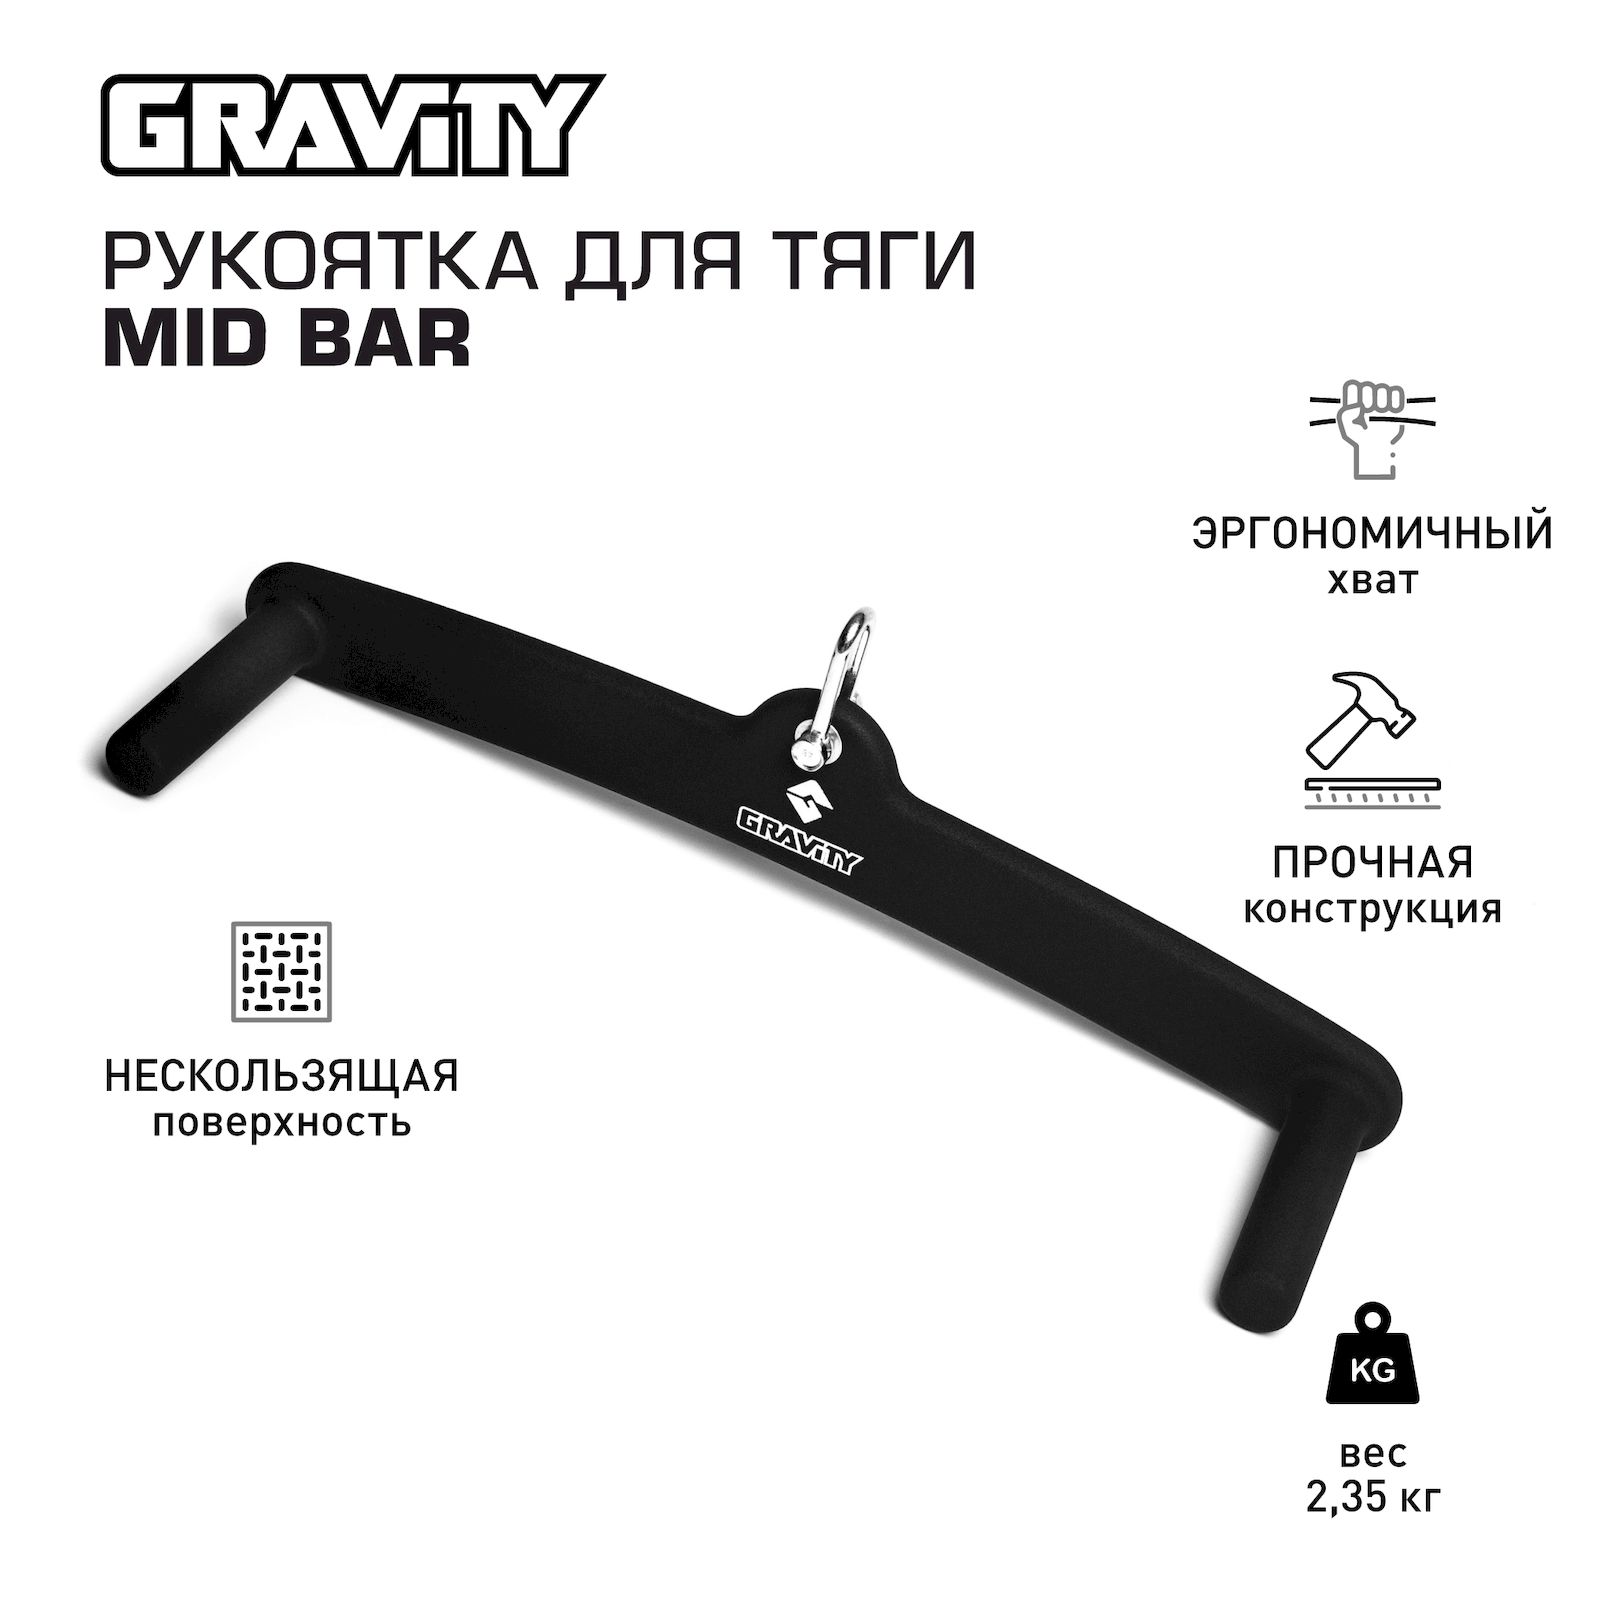 Рукоятка для тяги Gravity MID BAR